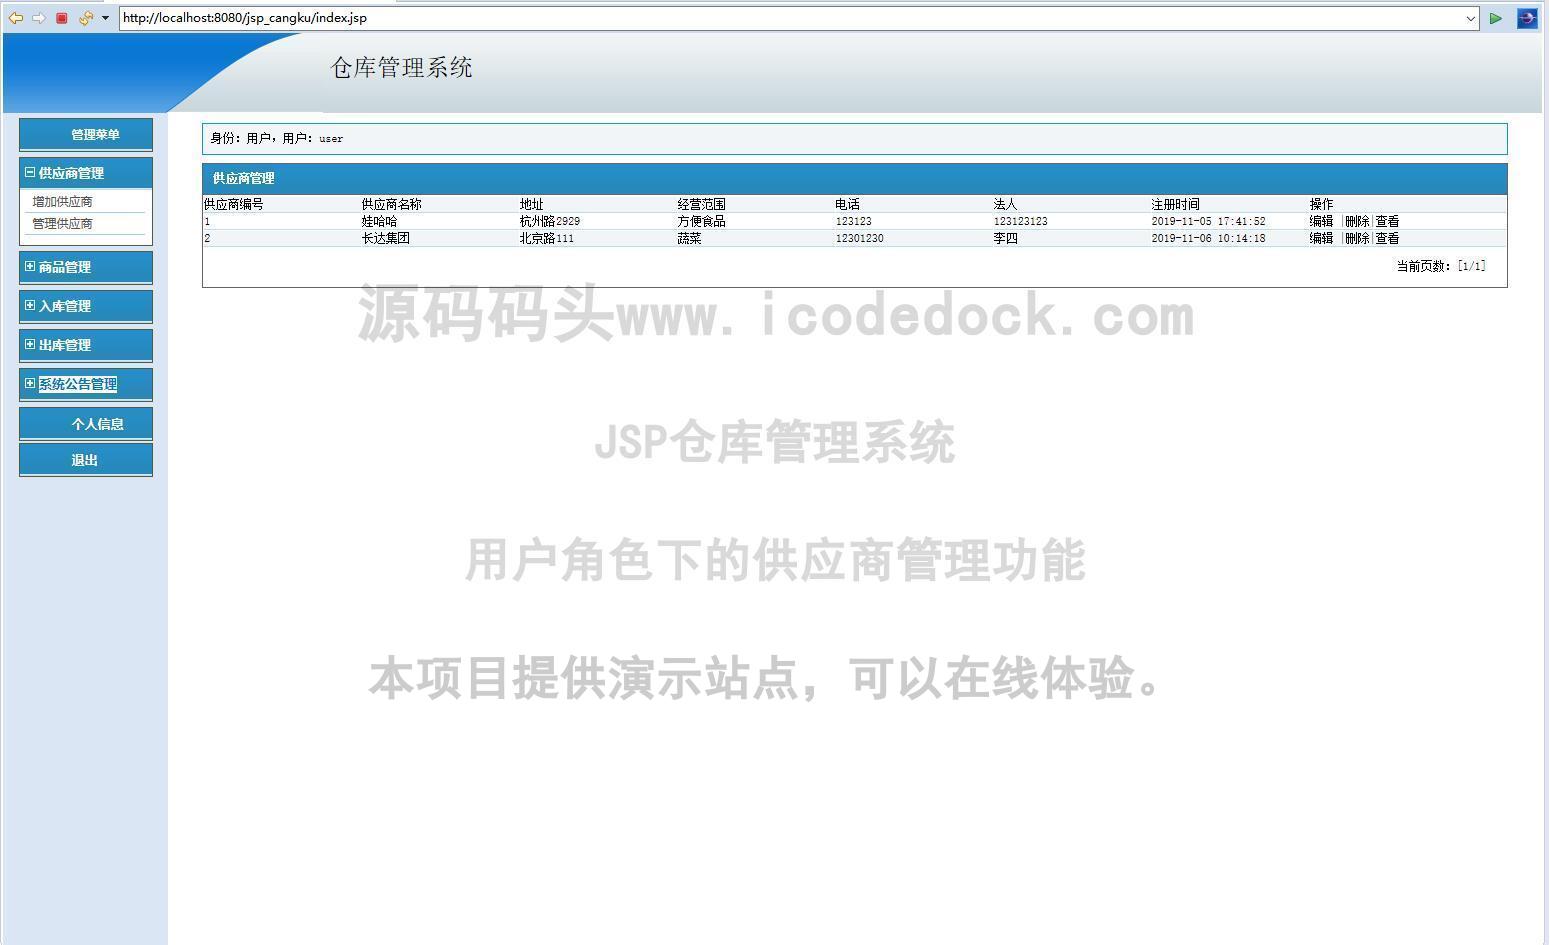 源码码头-JSP仓库管理系统-用户角色-供应商管理